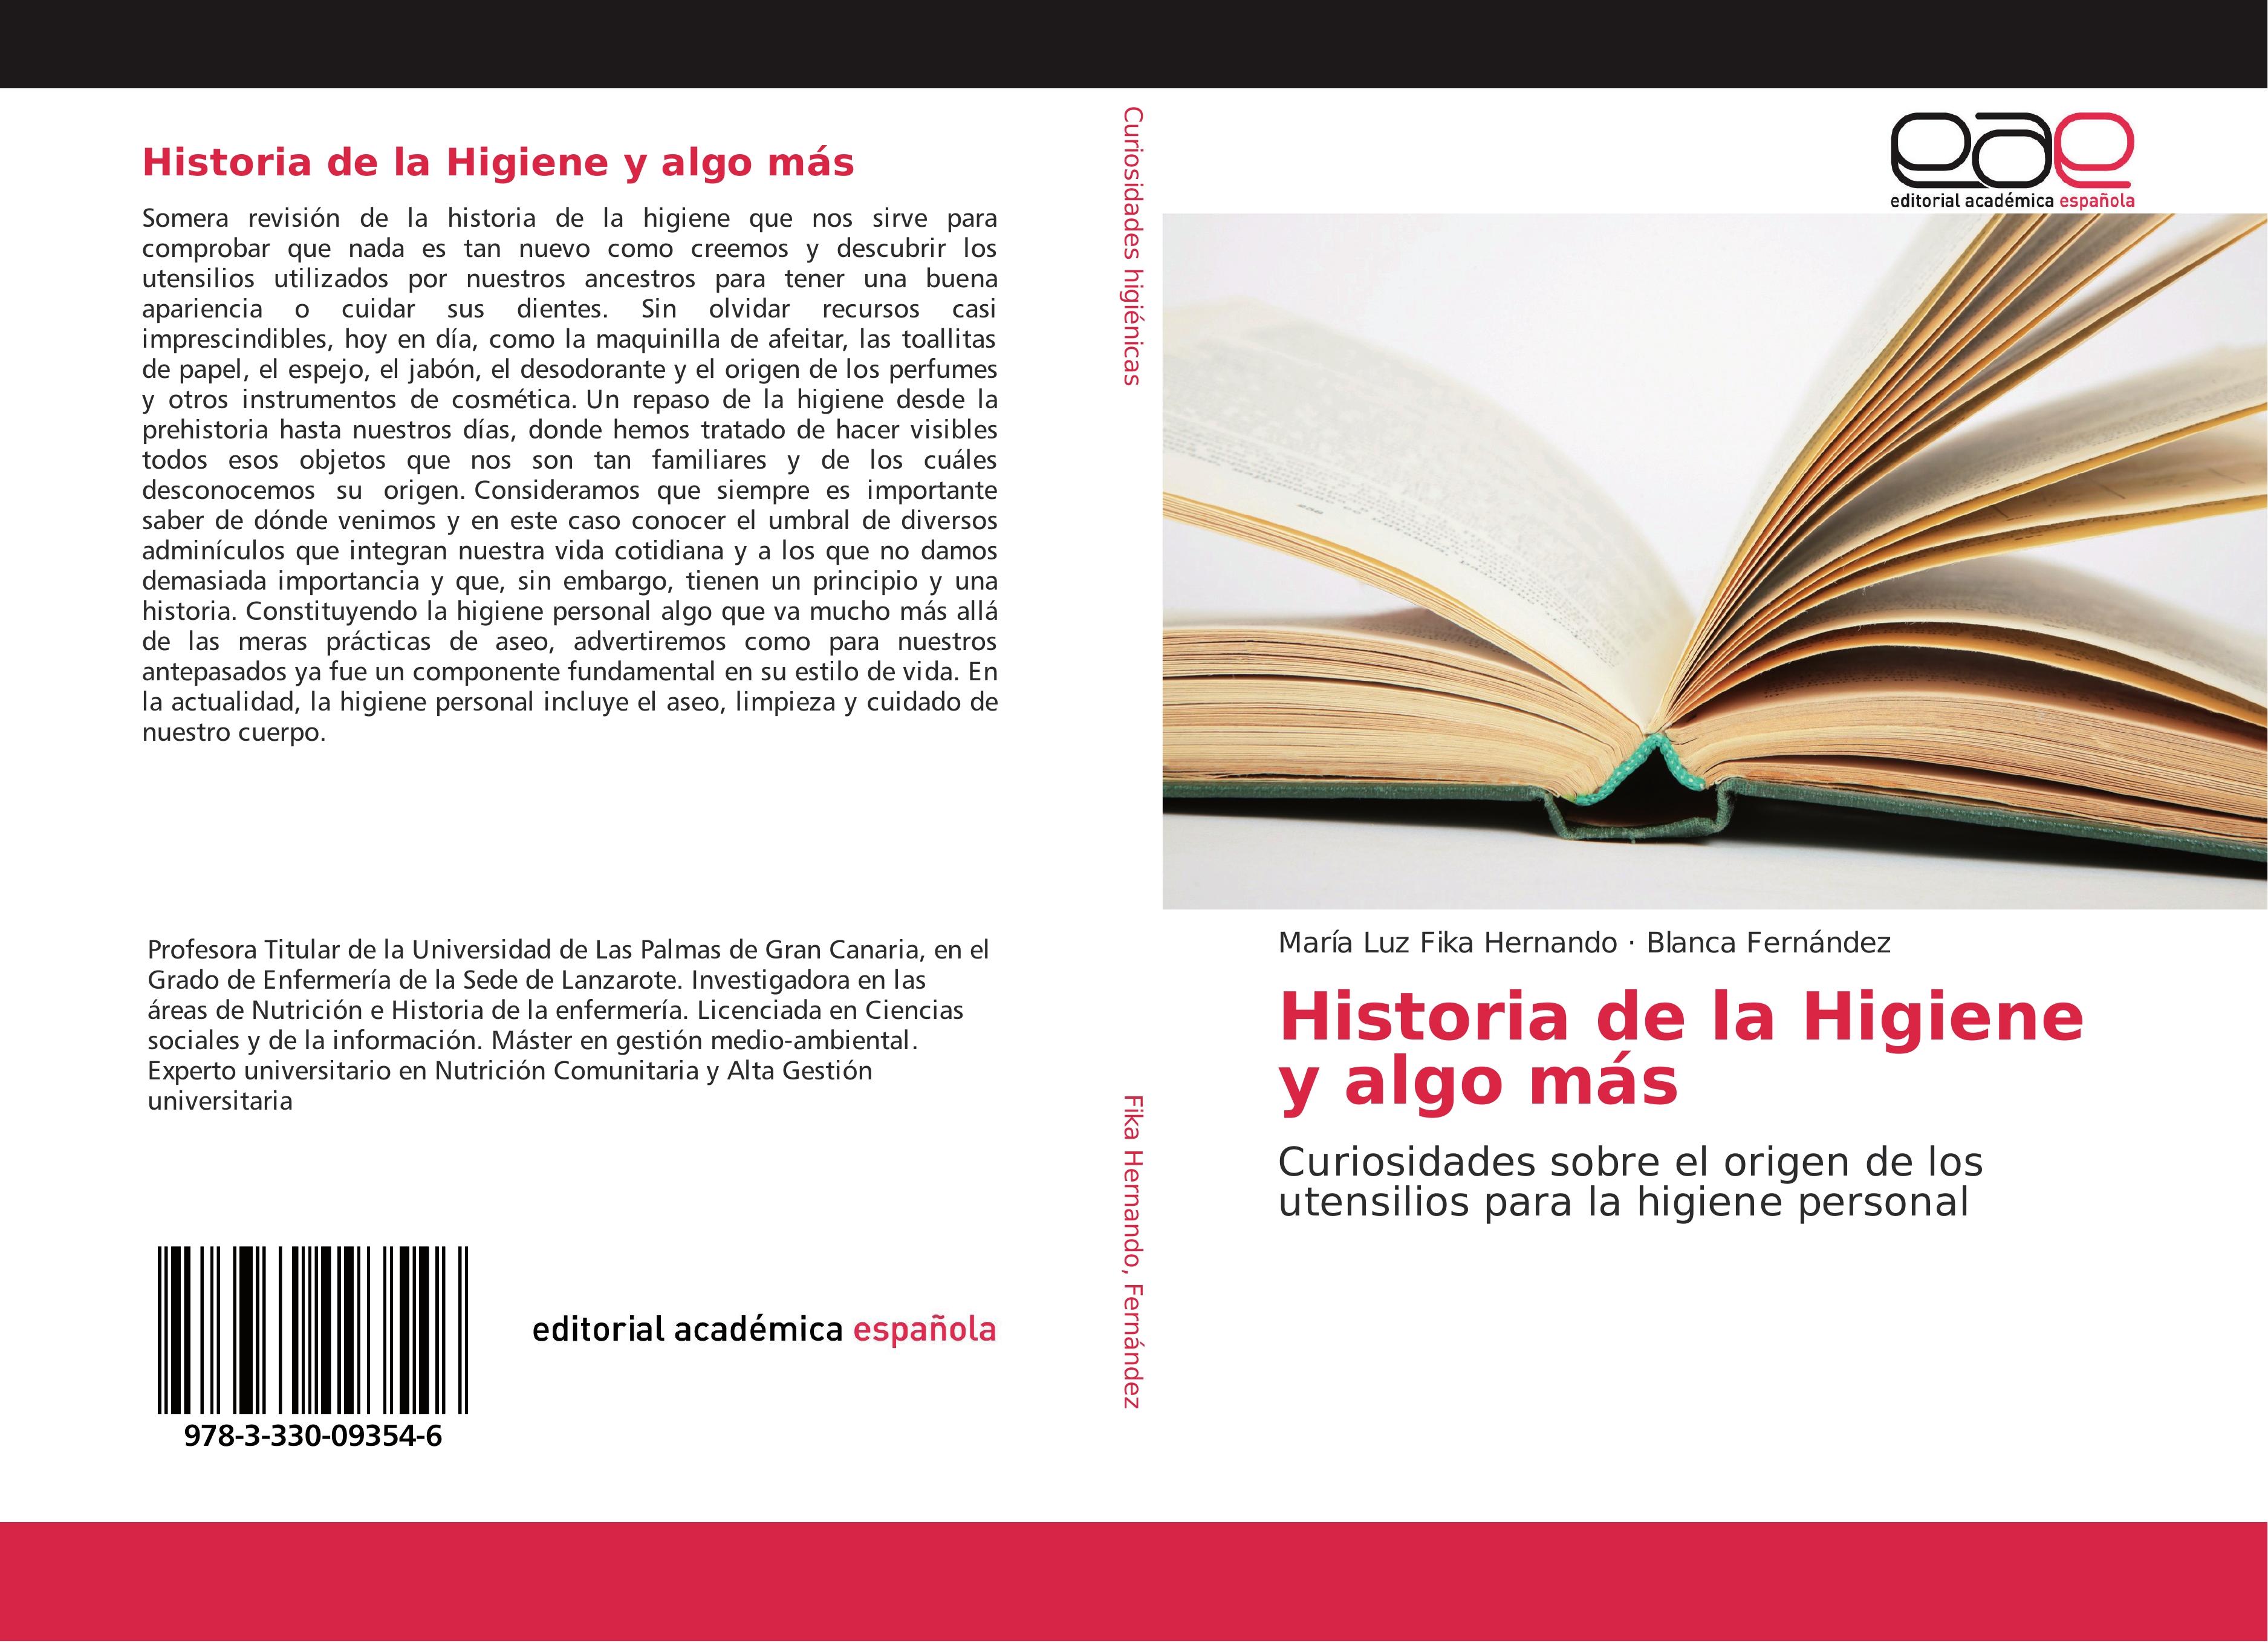 Historia de la Higiene y algo más - María Luz Fika Hernando Blanca Fernández